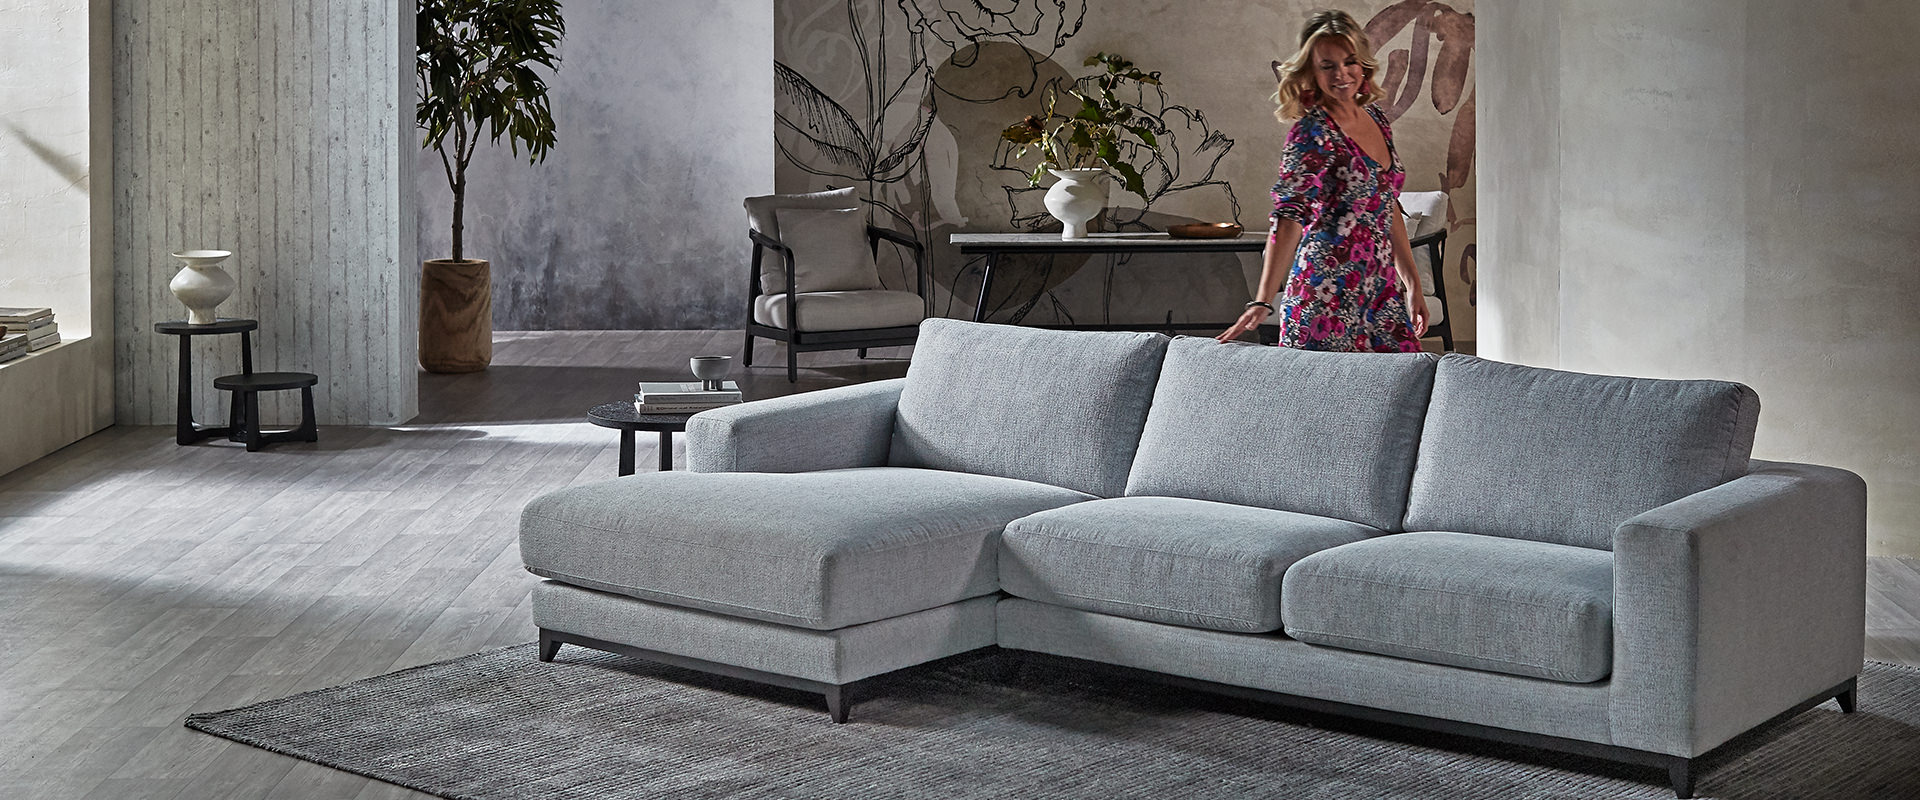 Richmond Fabric Sofa Modern Lounge Nick Scali